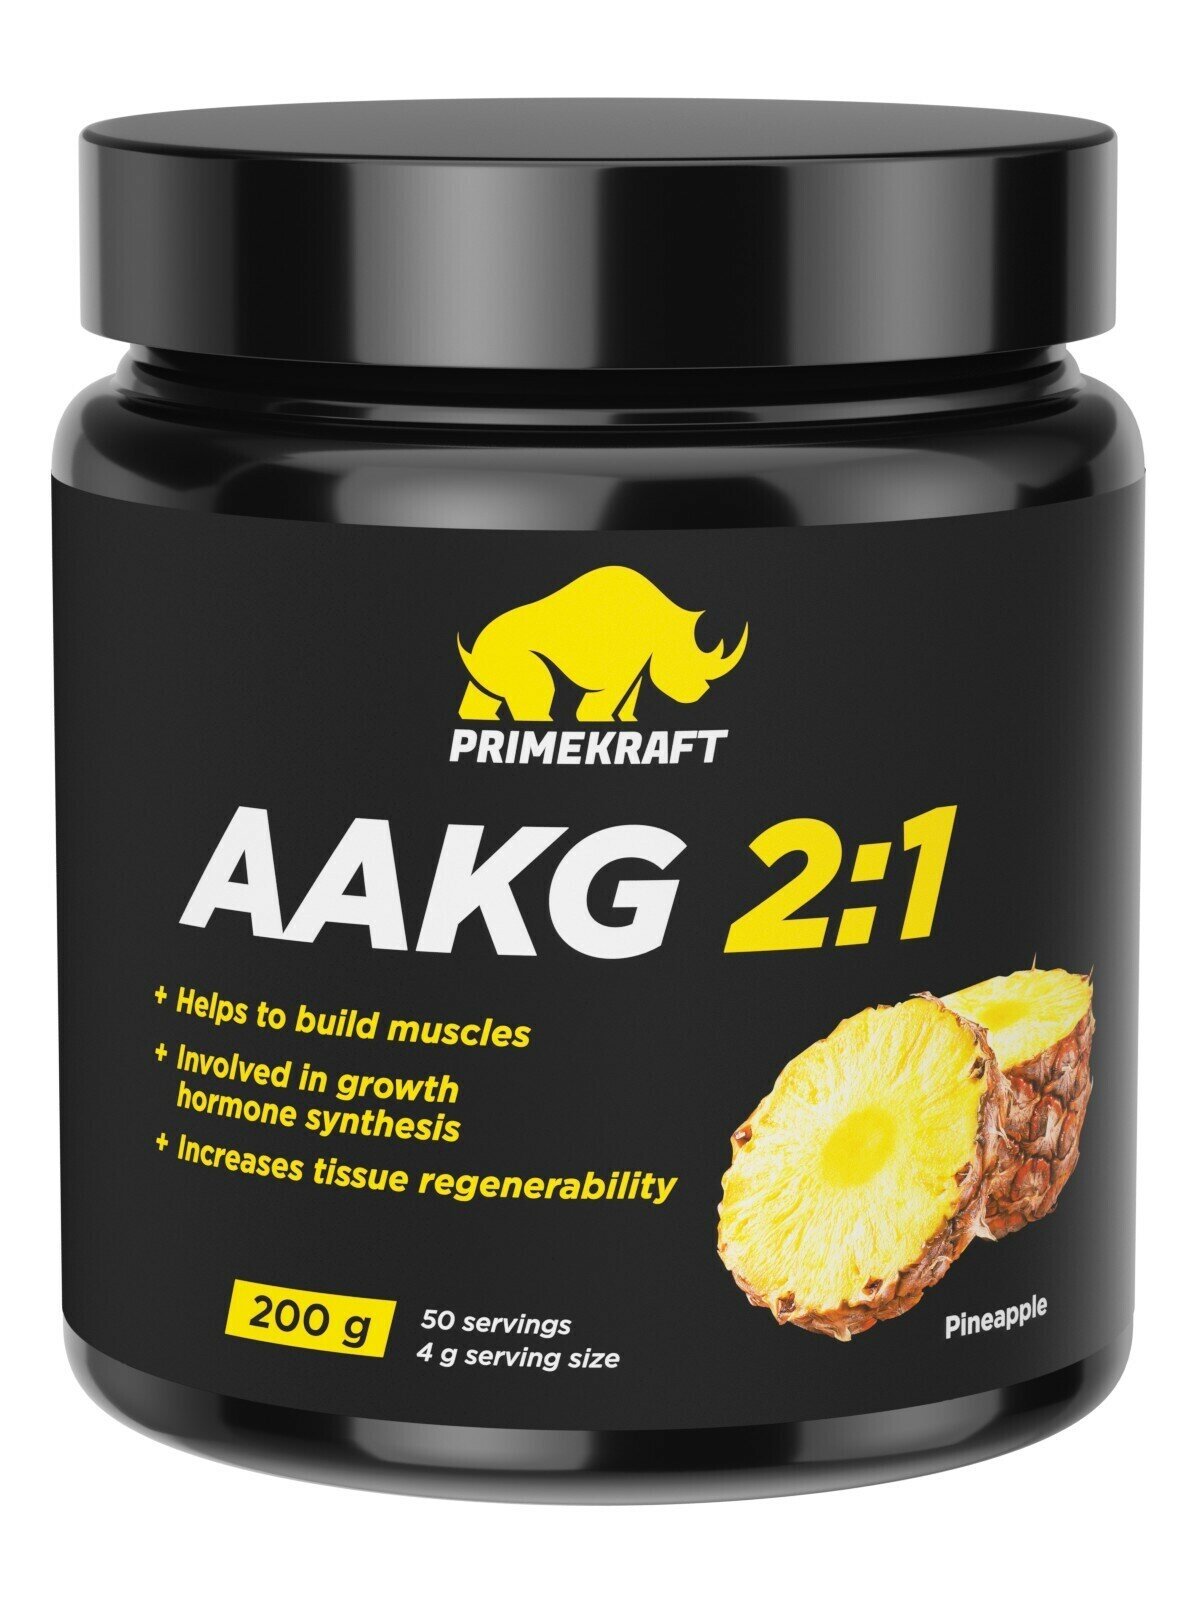 Аминокислоты аргинин PRIMEKRAFT AAKG 2:1 (аакг / АКГ) Ананас, 200 г / 50 порций